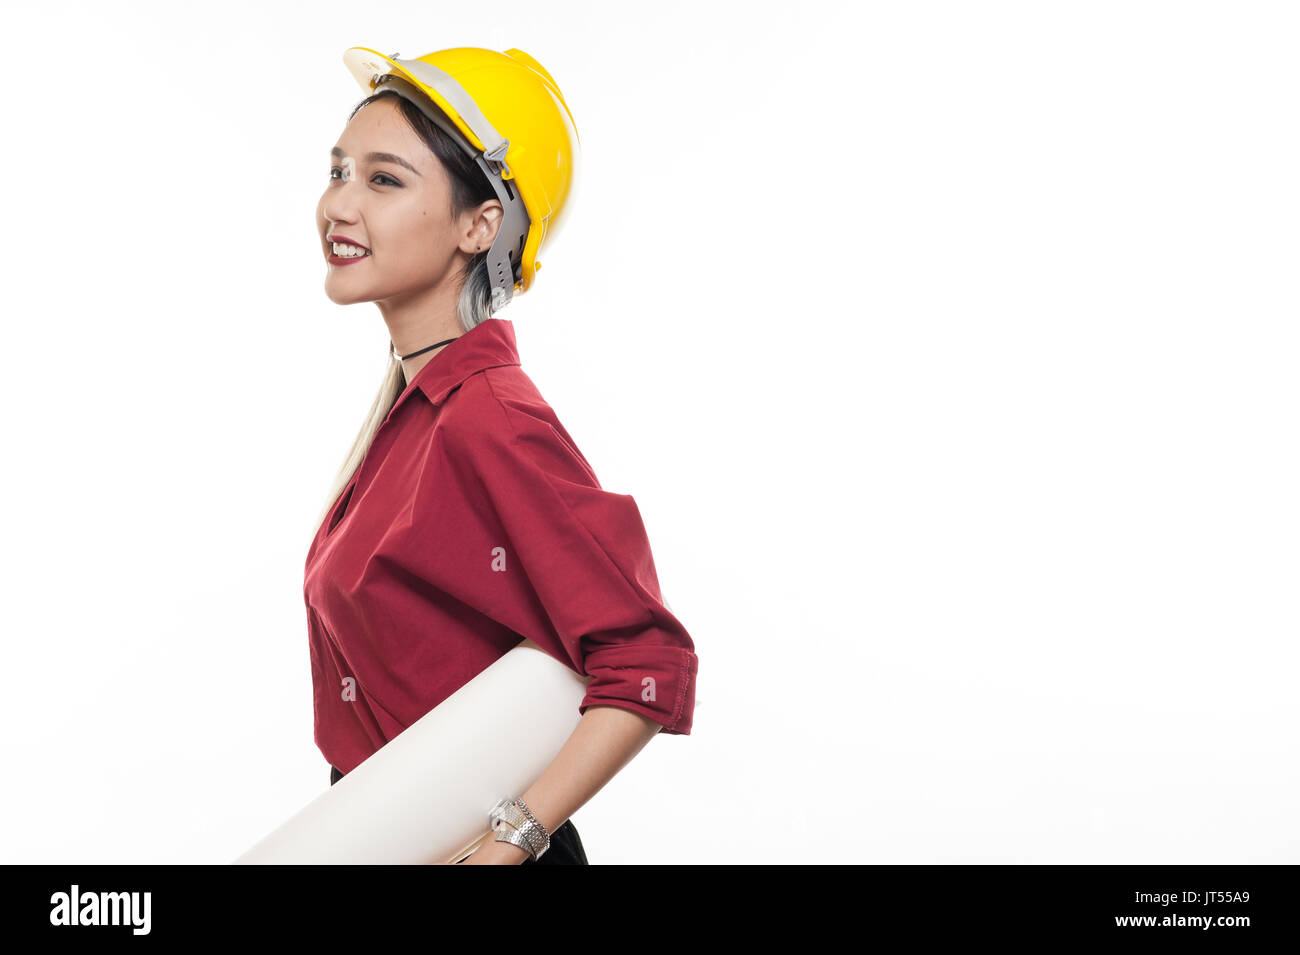 Junge asiatische Frau Architekt mit roten Hemd und gelben Helm Lächeln beim Tragen Blaupause Papiere. industriellen Beruf Personen Konzept Stockfoto